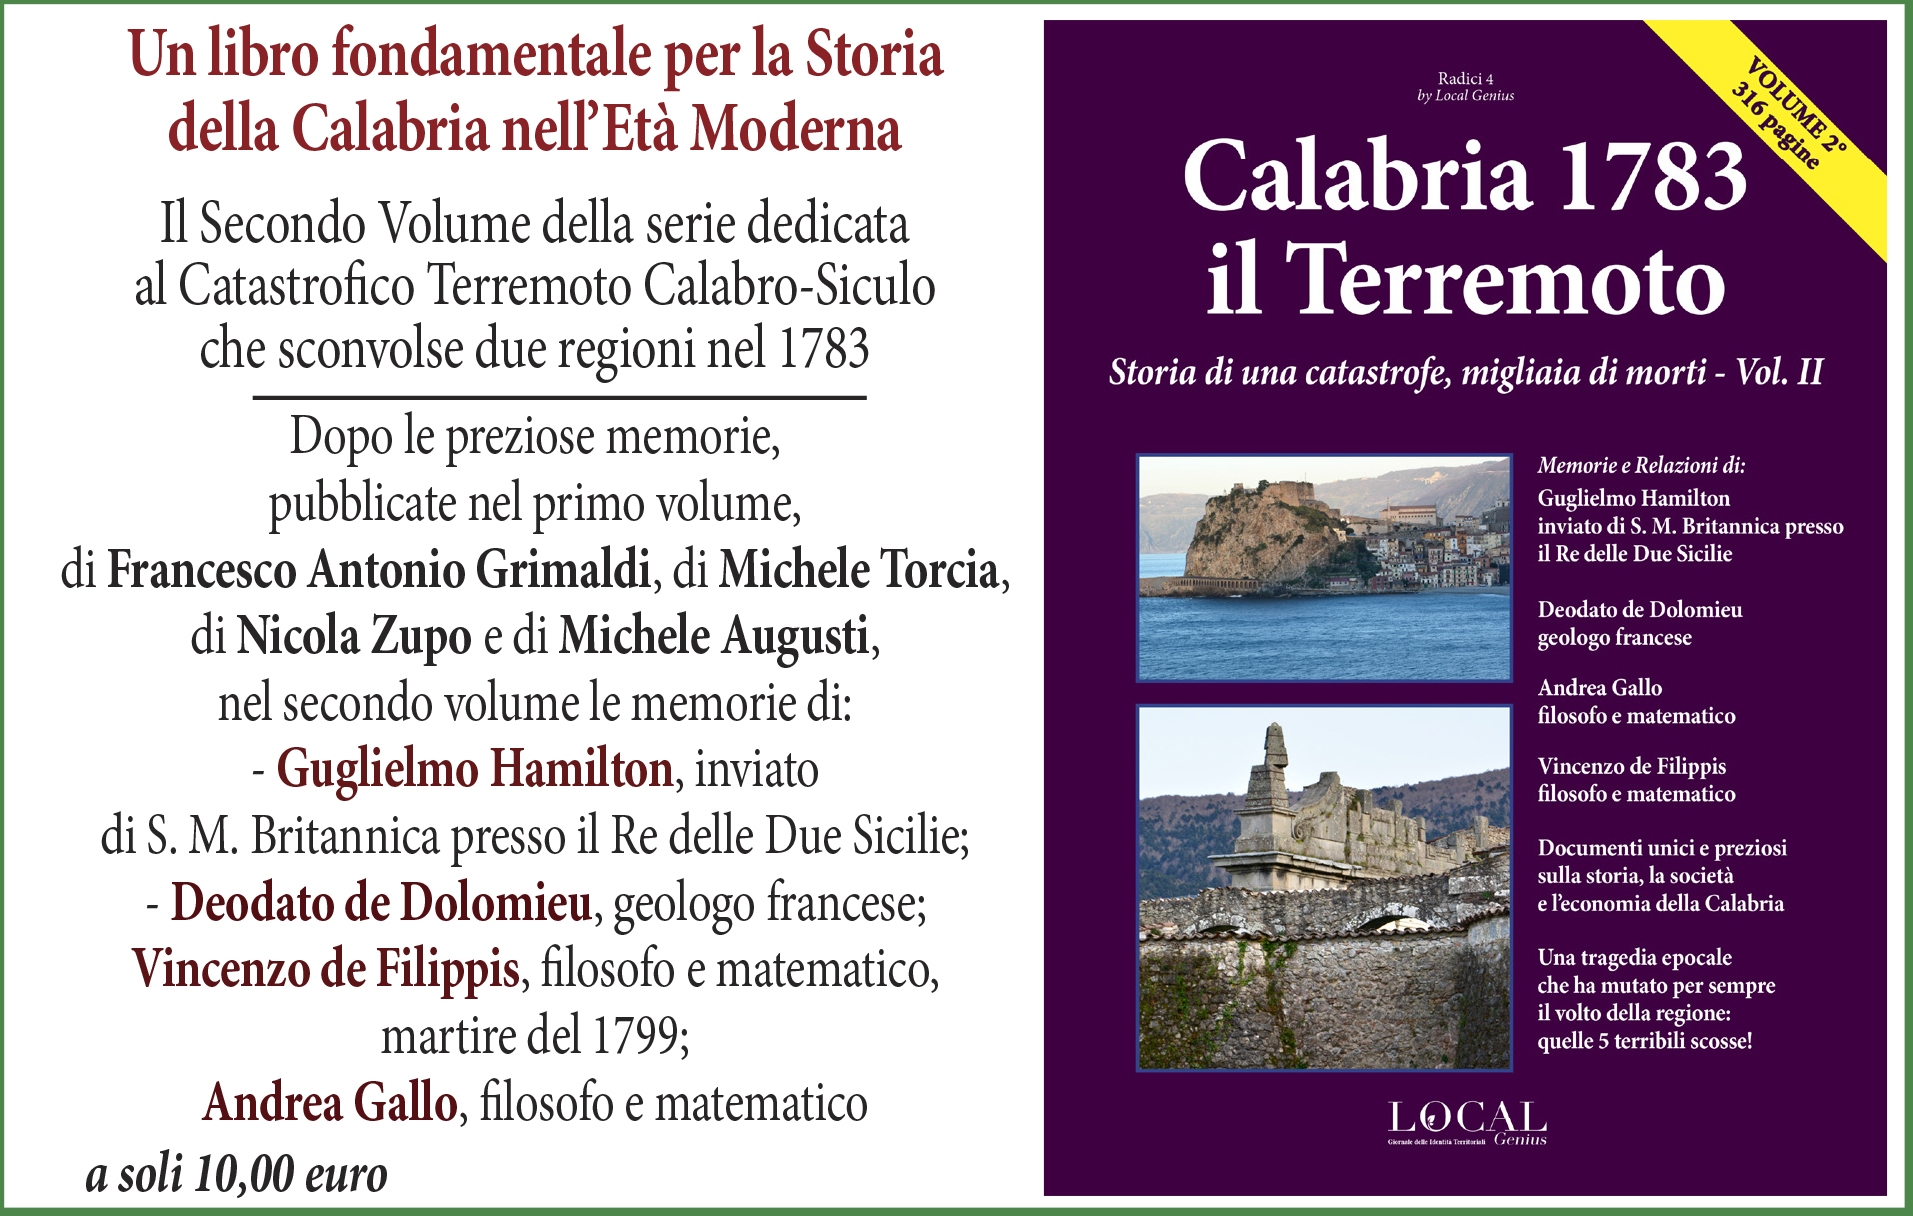 Storia della Calabria nell’Età Moderna: edito da Local Genius il prezioso secondo volume sul catastrofico Terremoto del 1783